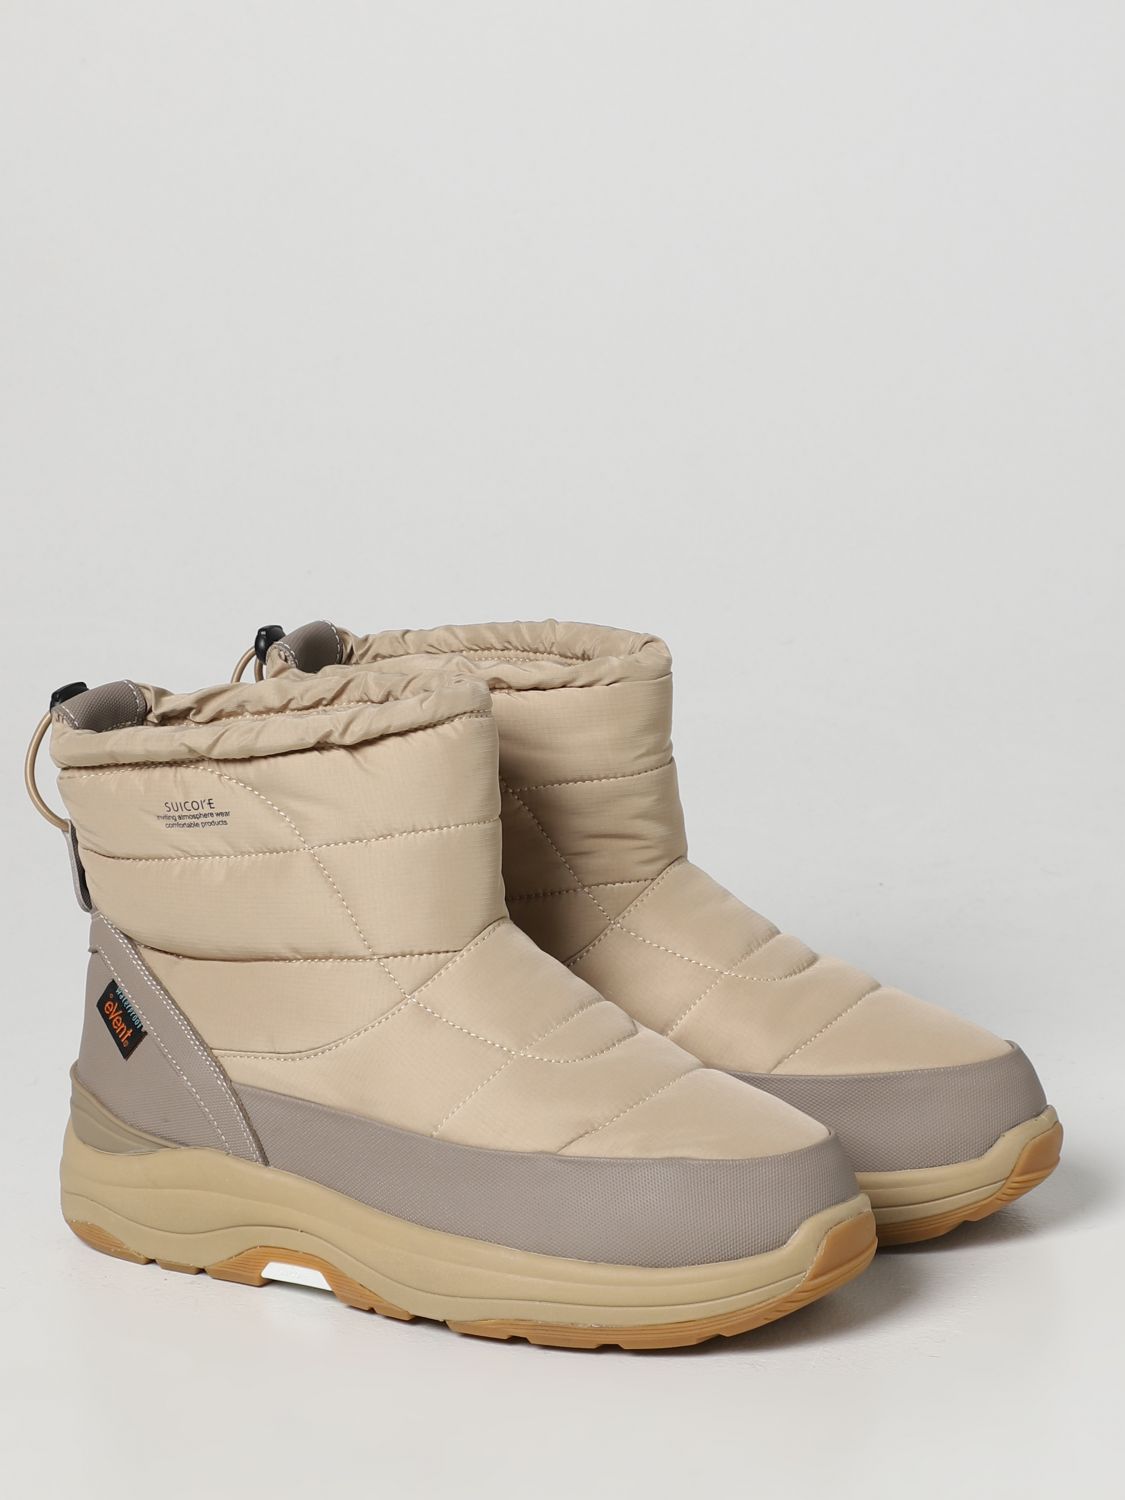 Boots Suicoke: Suicoke boots for men beige 2